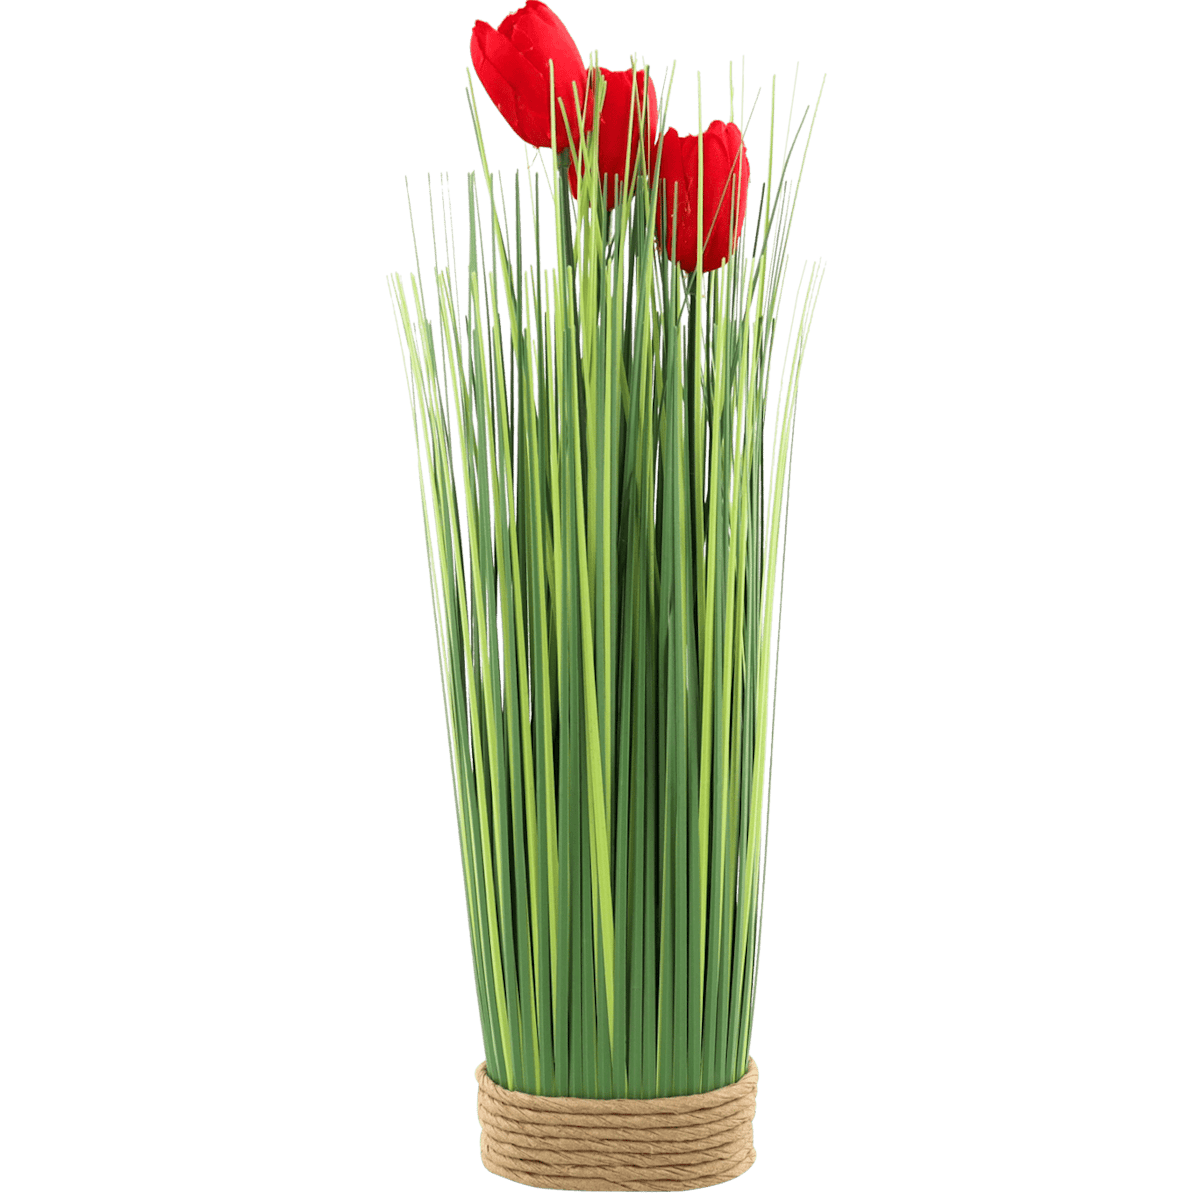 Grashalme mit Tulpen